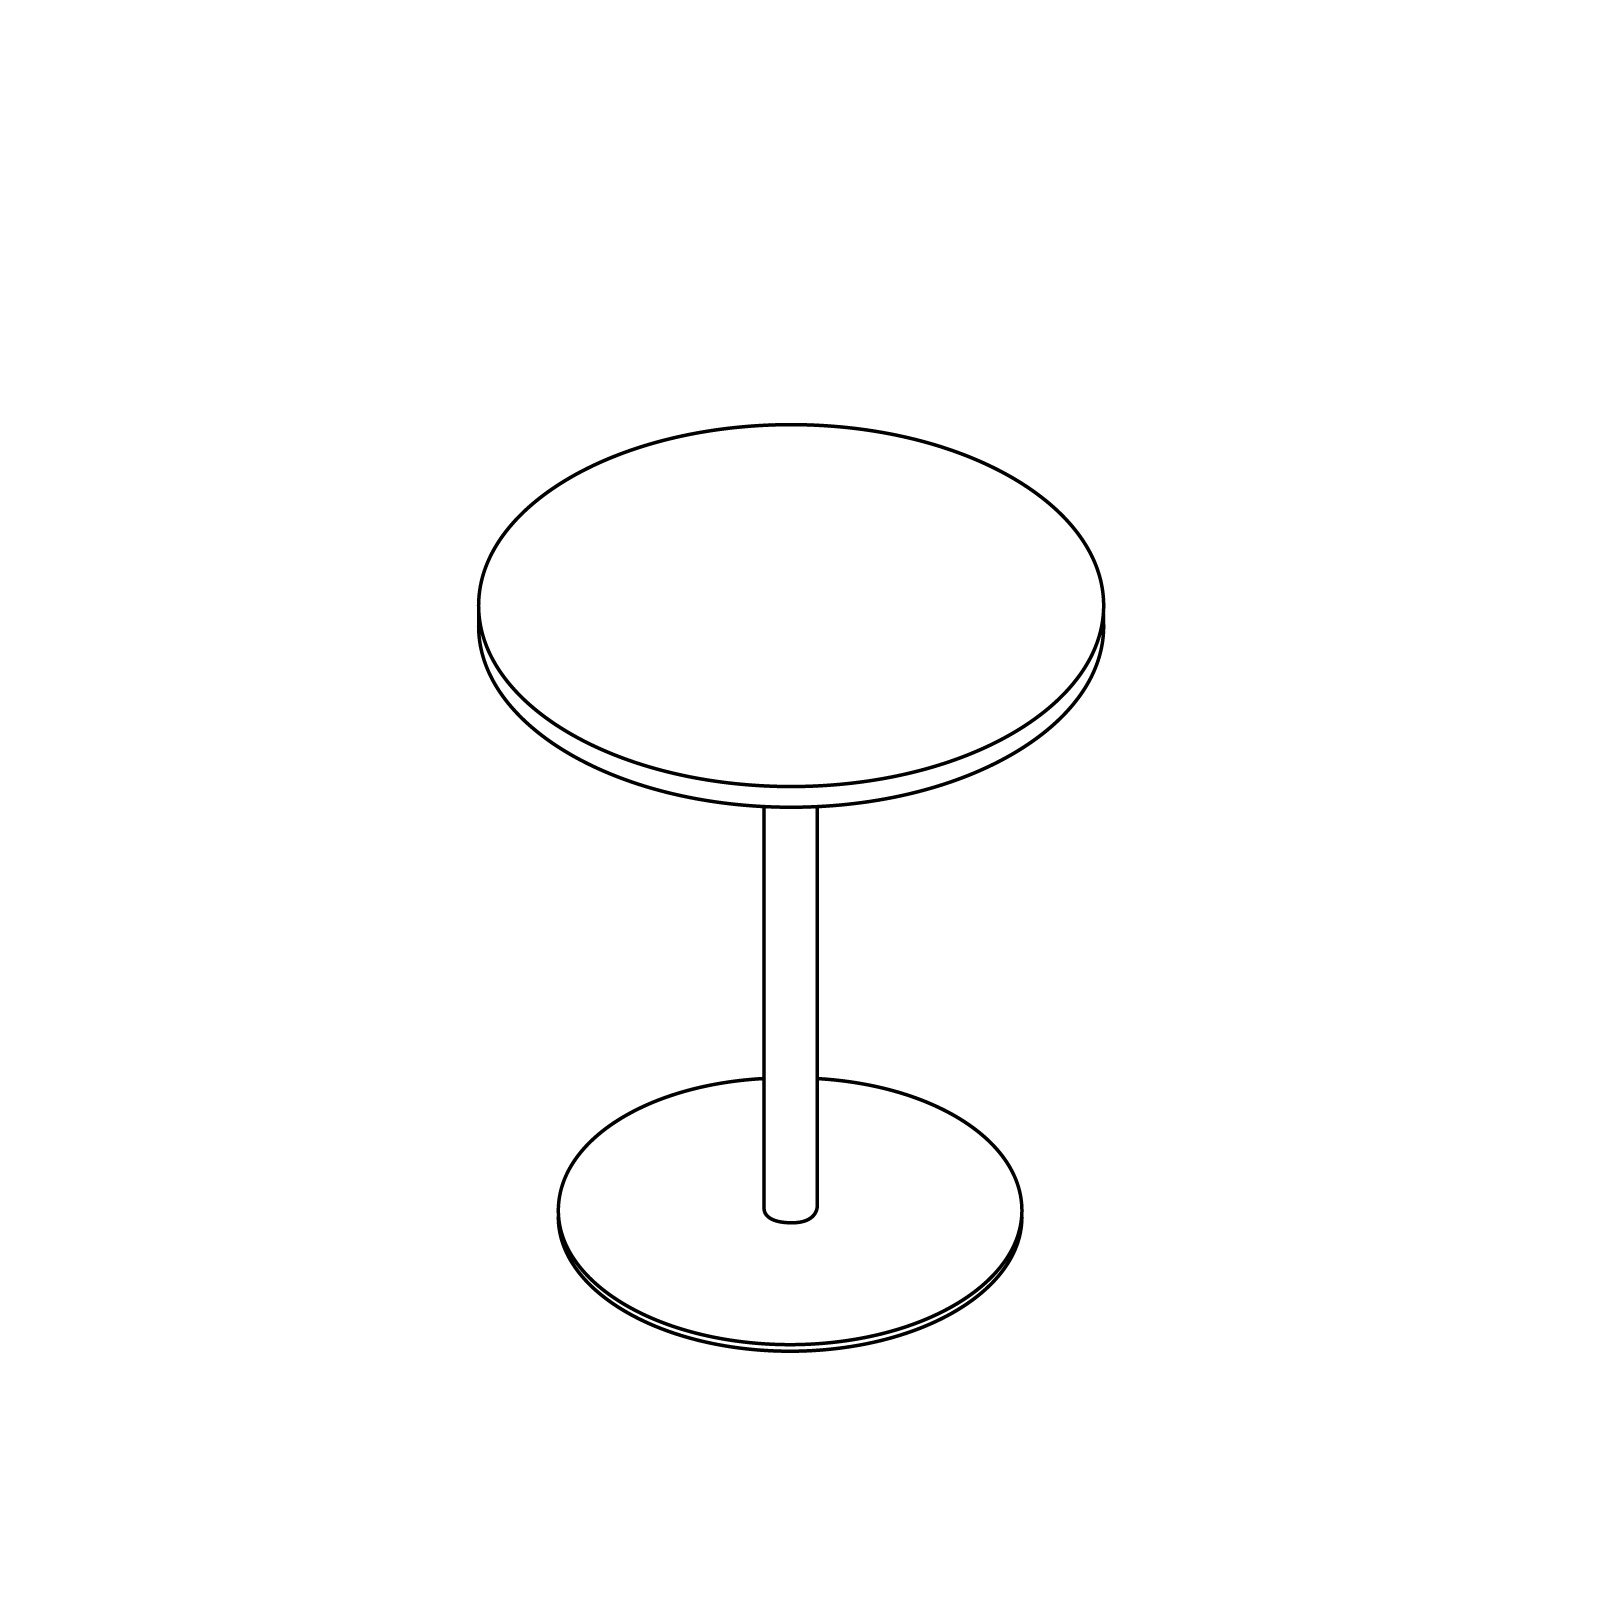 线描图 - Tier咖啡桌 - 圆形